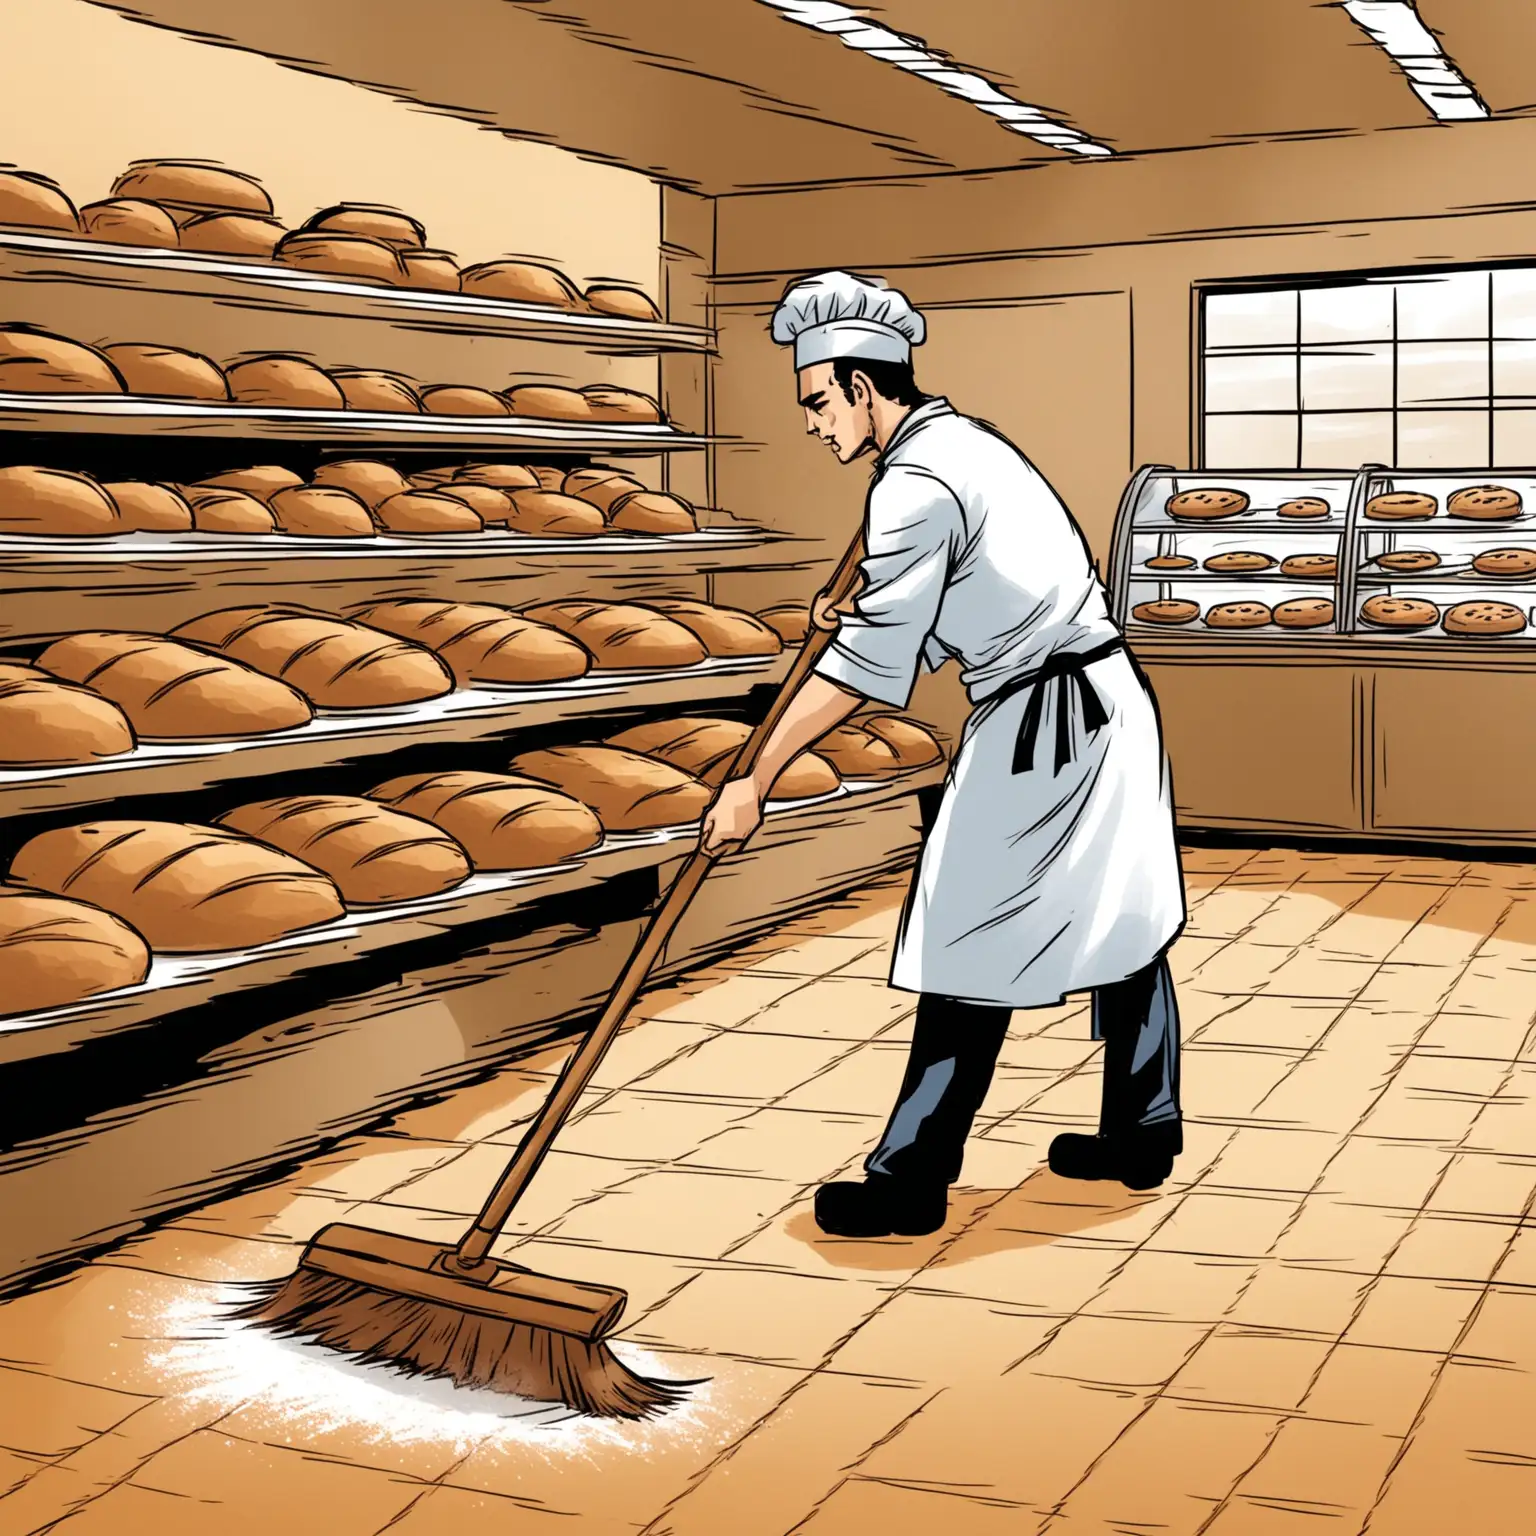 Baker Sweeping Floor in Vibrant Bakery Scene